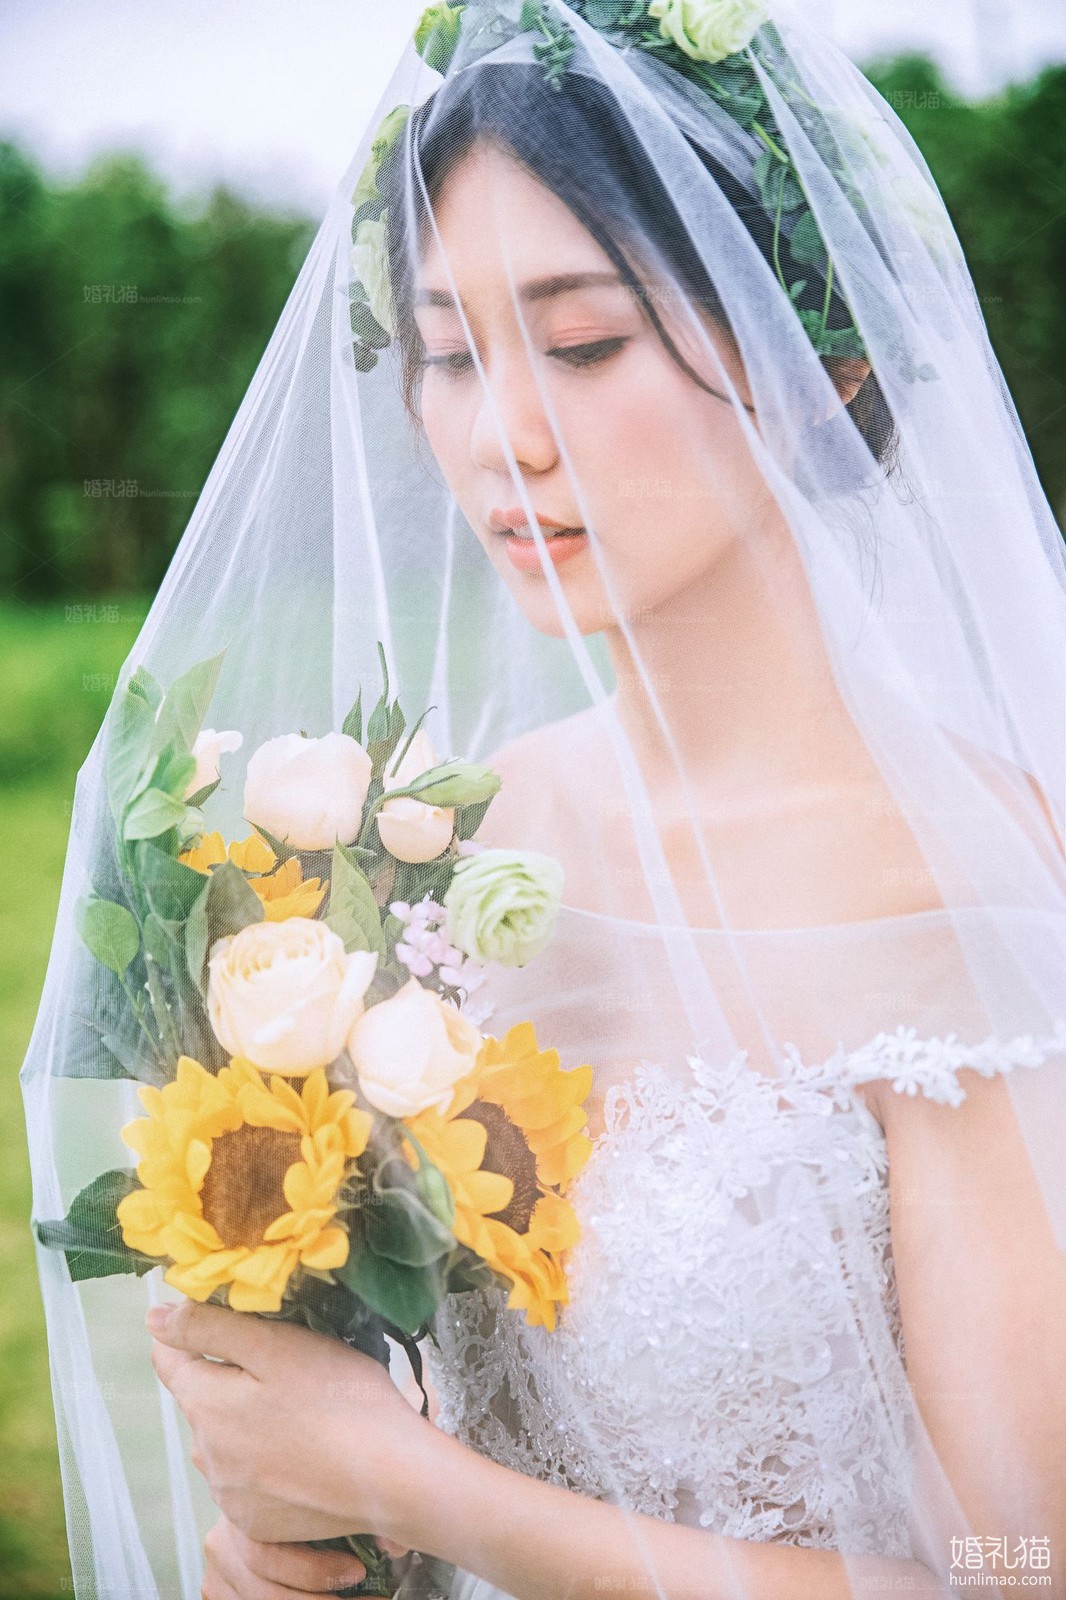 2019年7月广州婚纱照,,佛山婚纱照,婚纱照图片